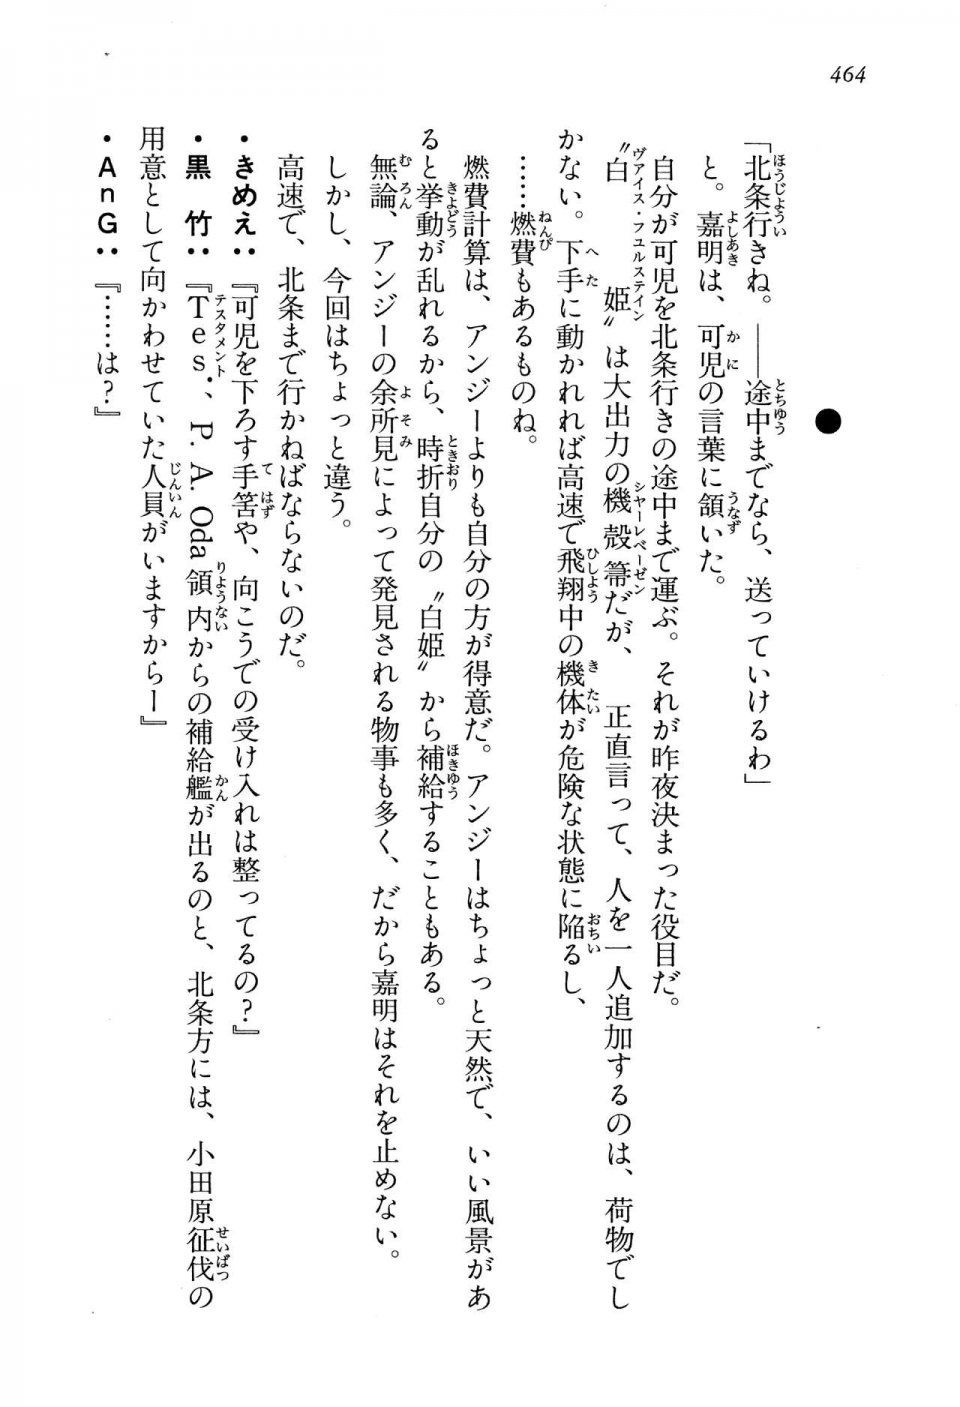 Kyoukai Senjou no Horizon LN Vol 13(6A) - Photo #464